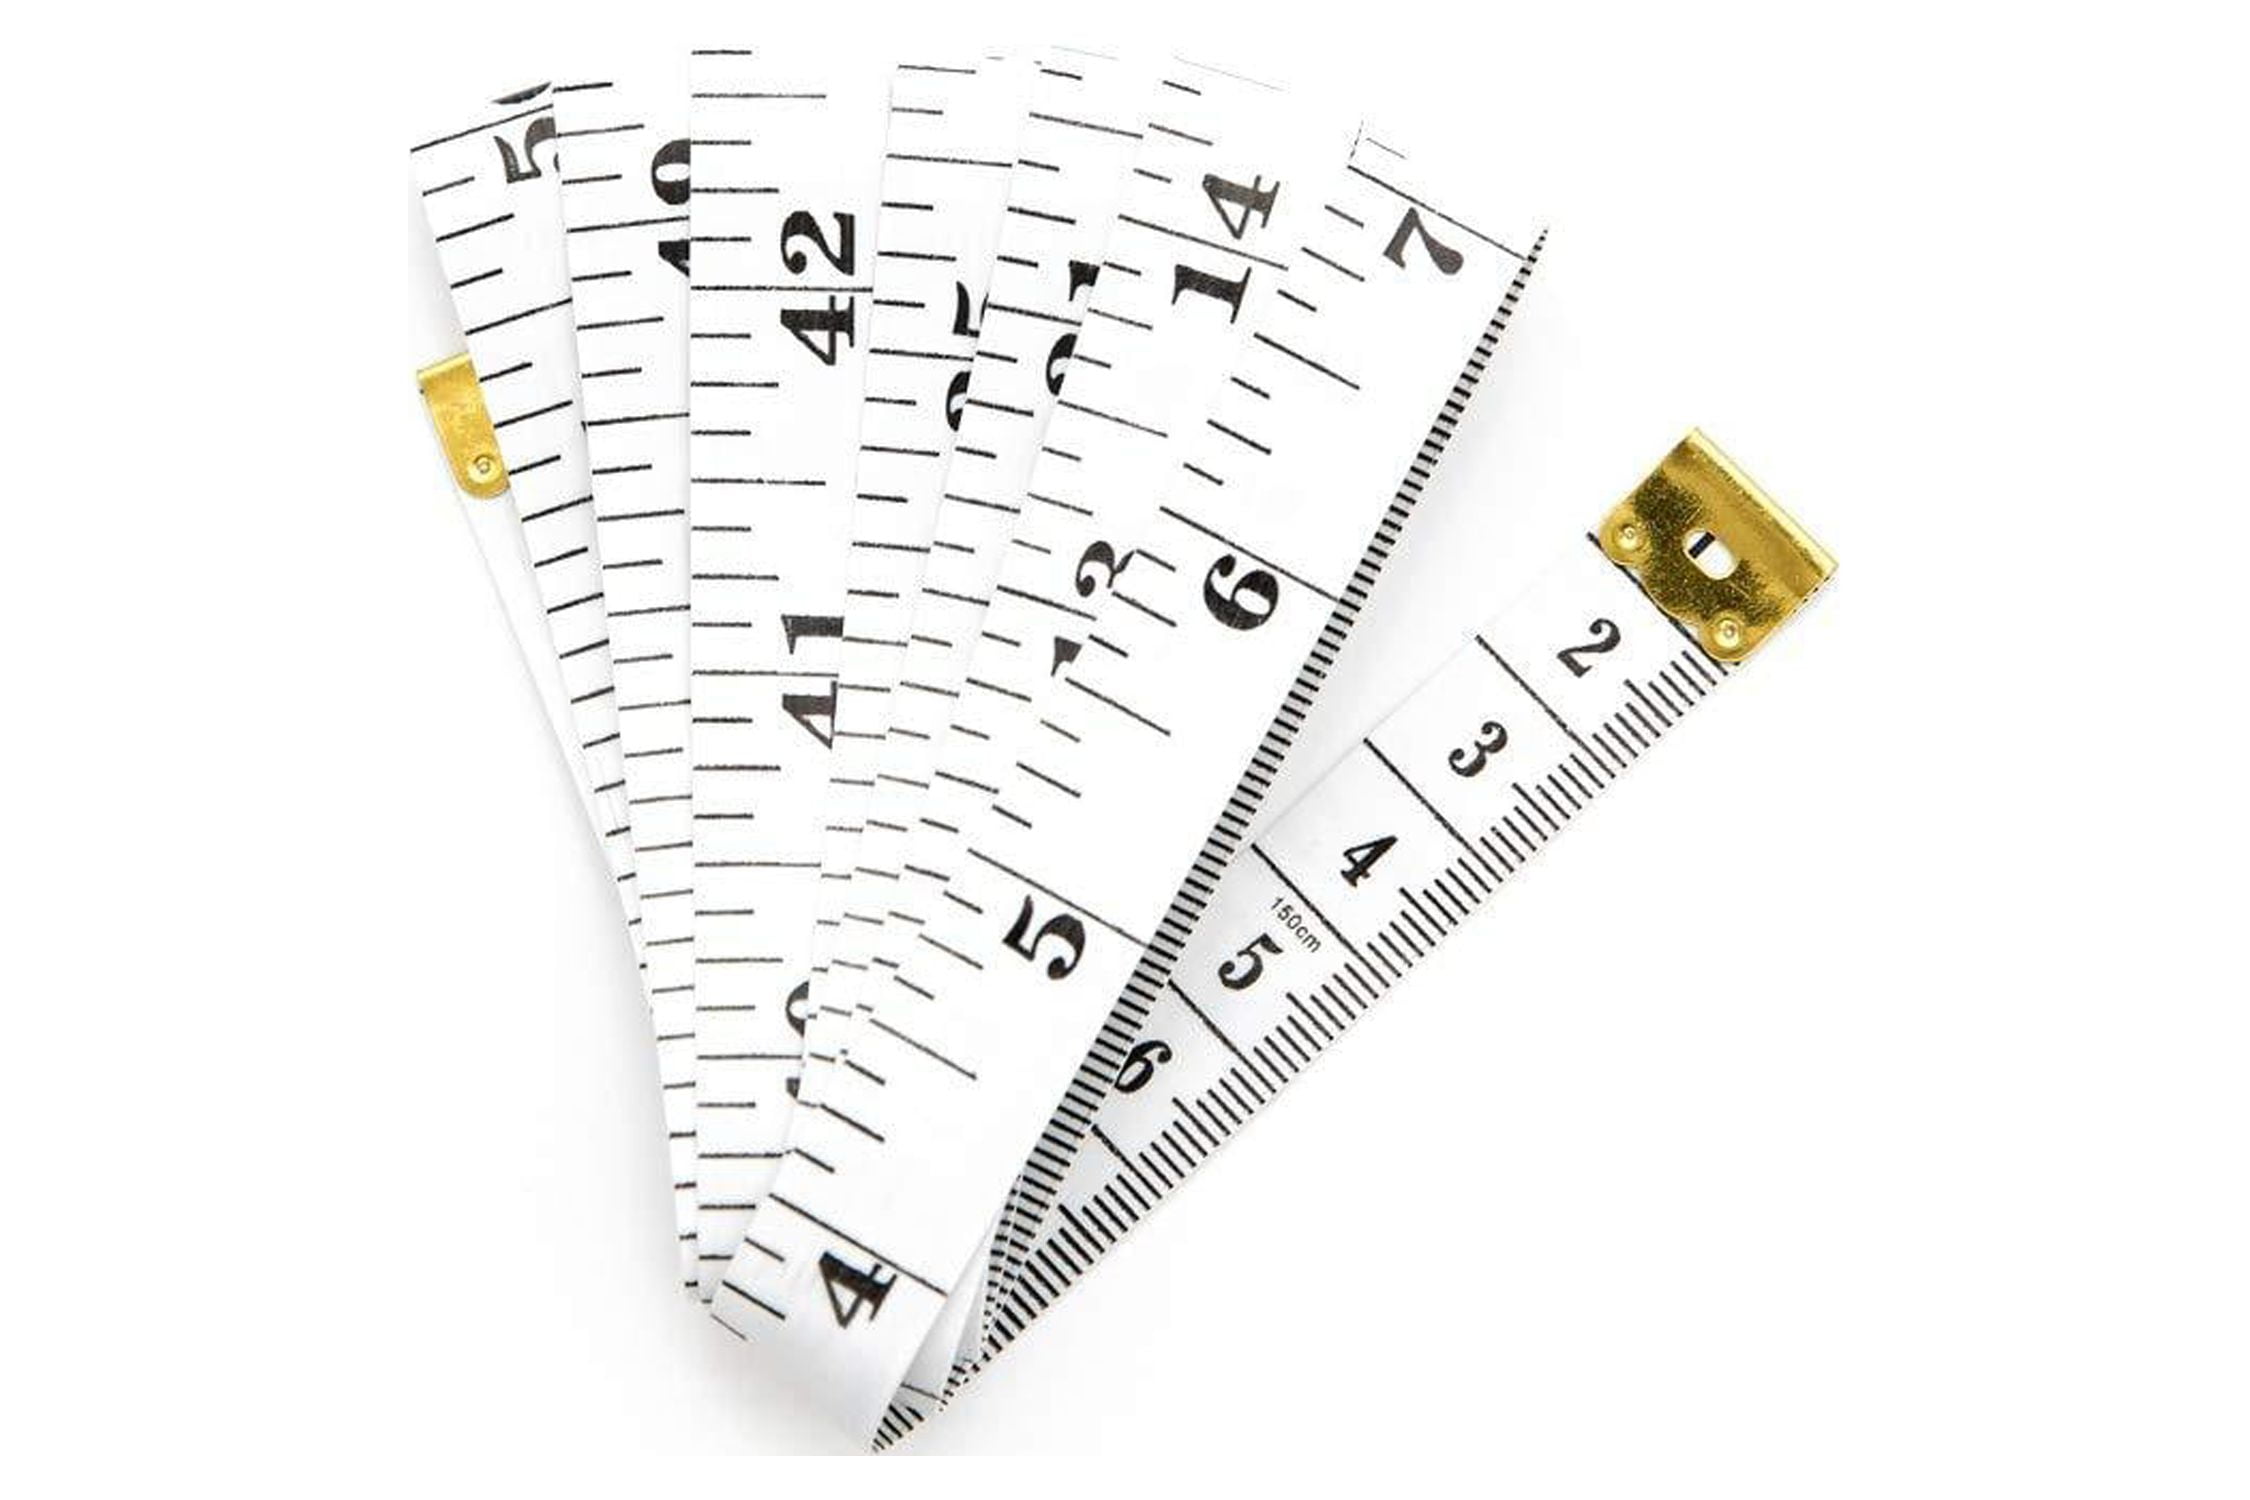 HANSMAYA Flexible Tape Measure Pack of 2, Accurate Dual Scale